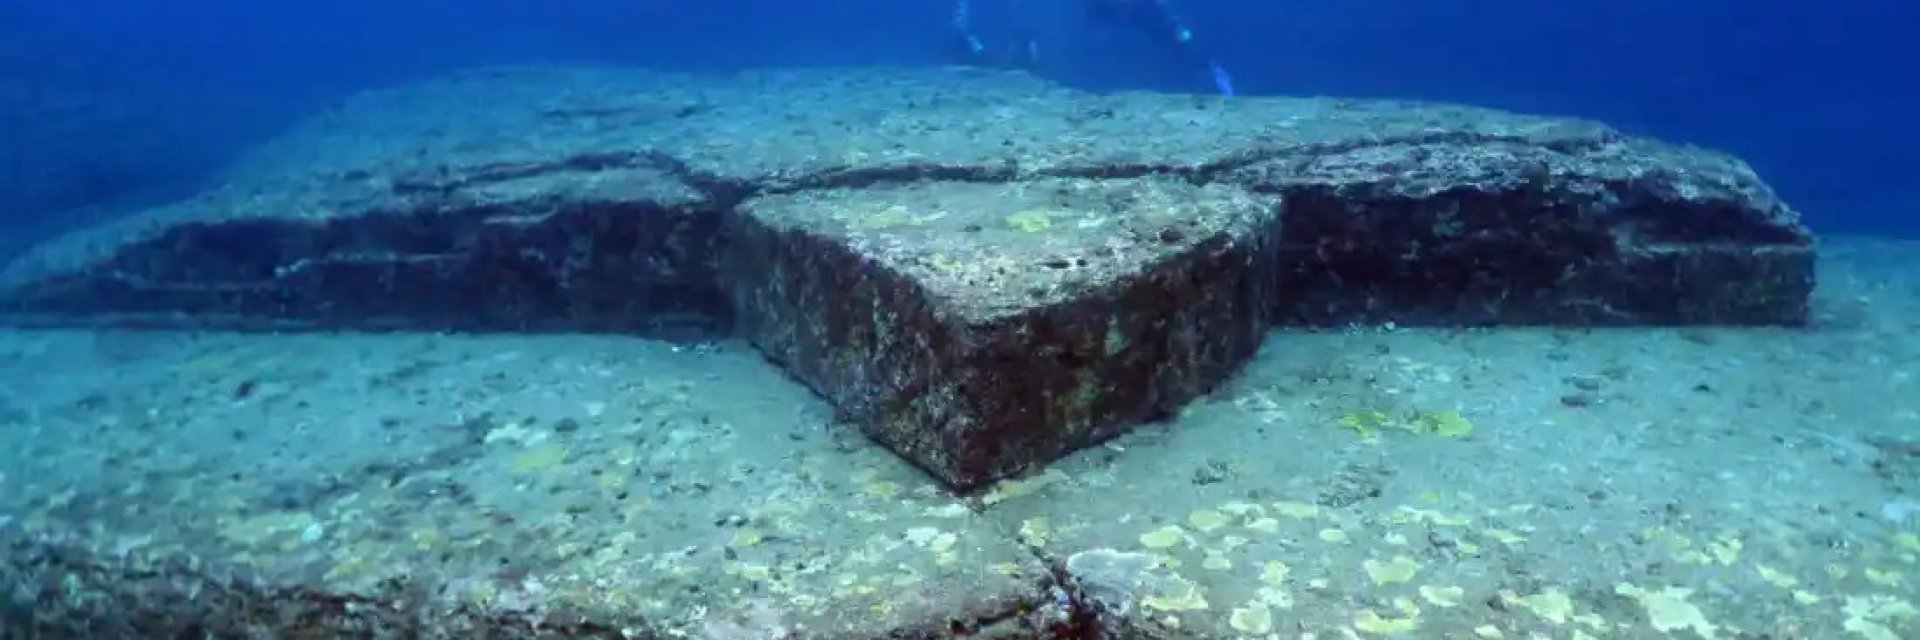 Загадката Йонагуни: Естествена структура или изгубената Атлантида? (видео)